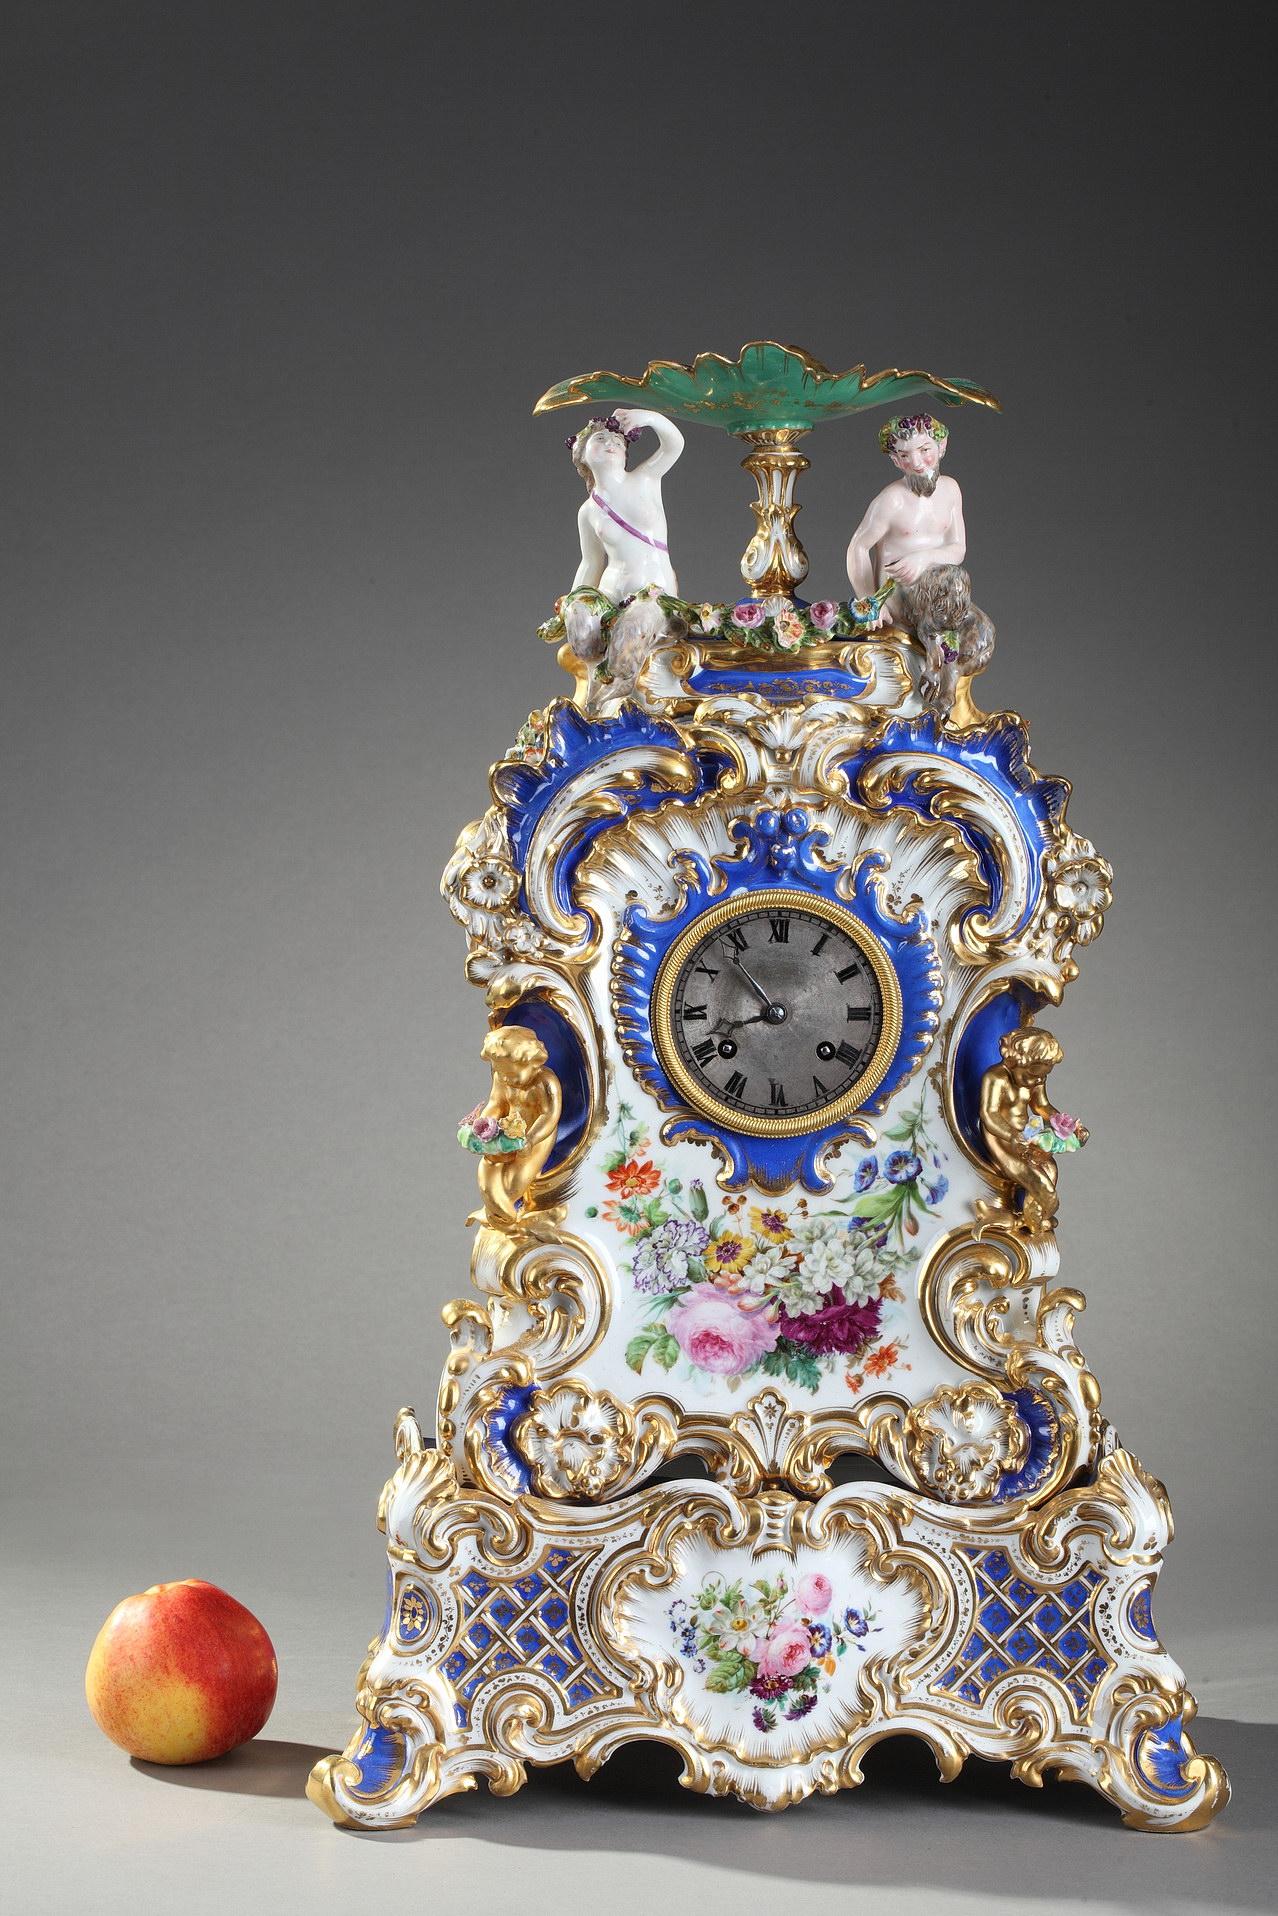 Polychrome Uhr aus feinem Porzellan, überragt von einer Bacchantin und einem Faun, der unter einer Tasse sitzt und eine Blumengirlande hält. Schimmernde Dekoration aus Blumensträußen, Ranken und Blattwerk auf blauem und weißem Hintergrund mit